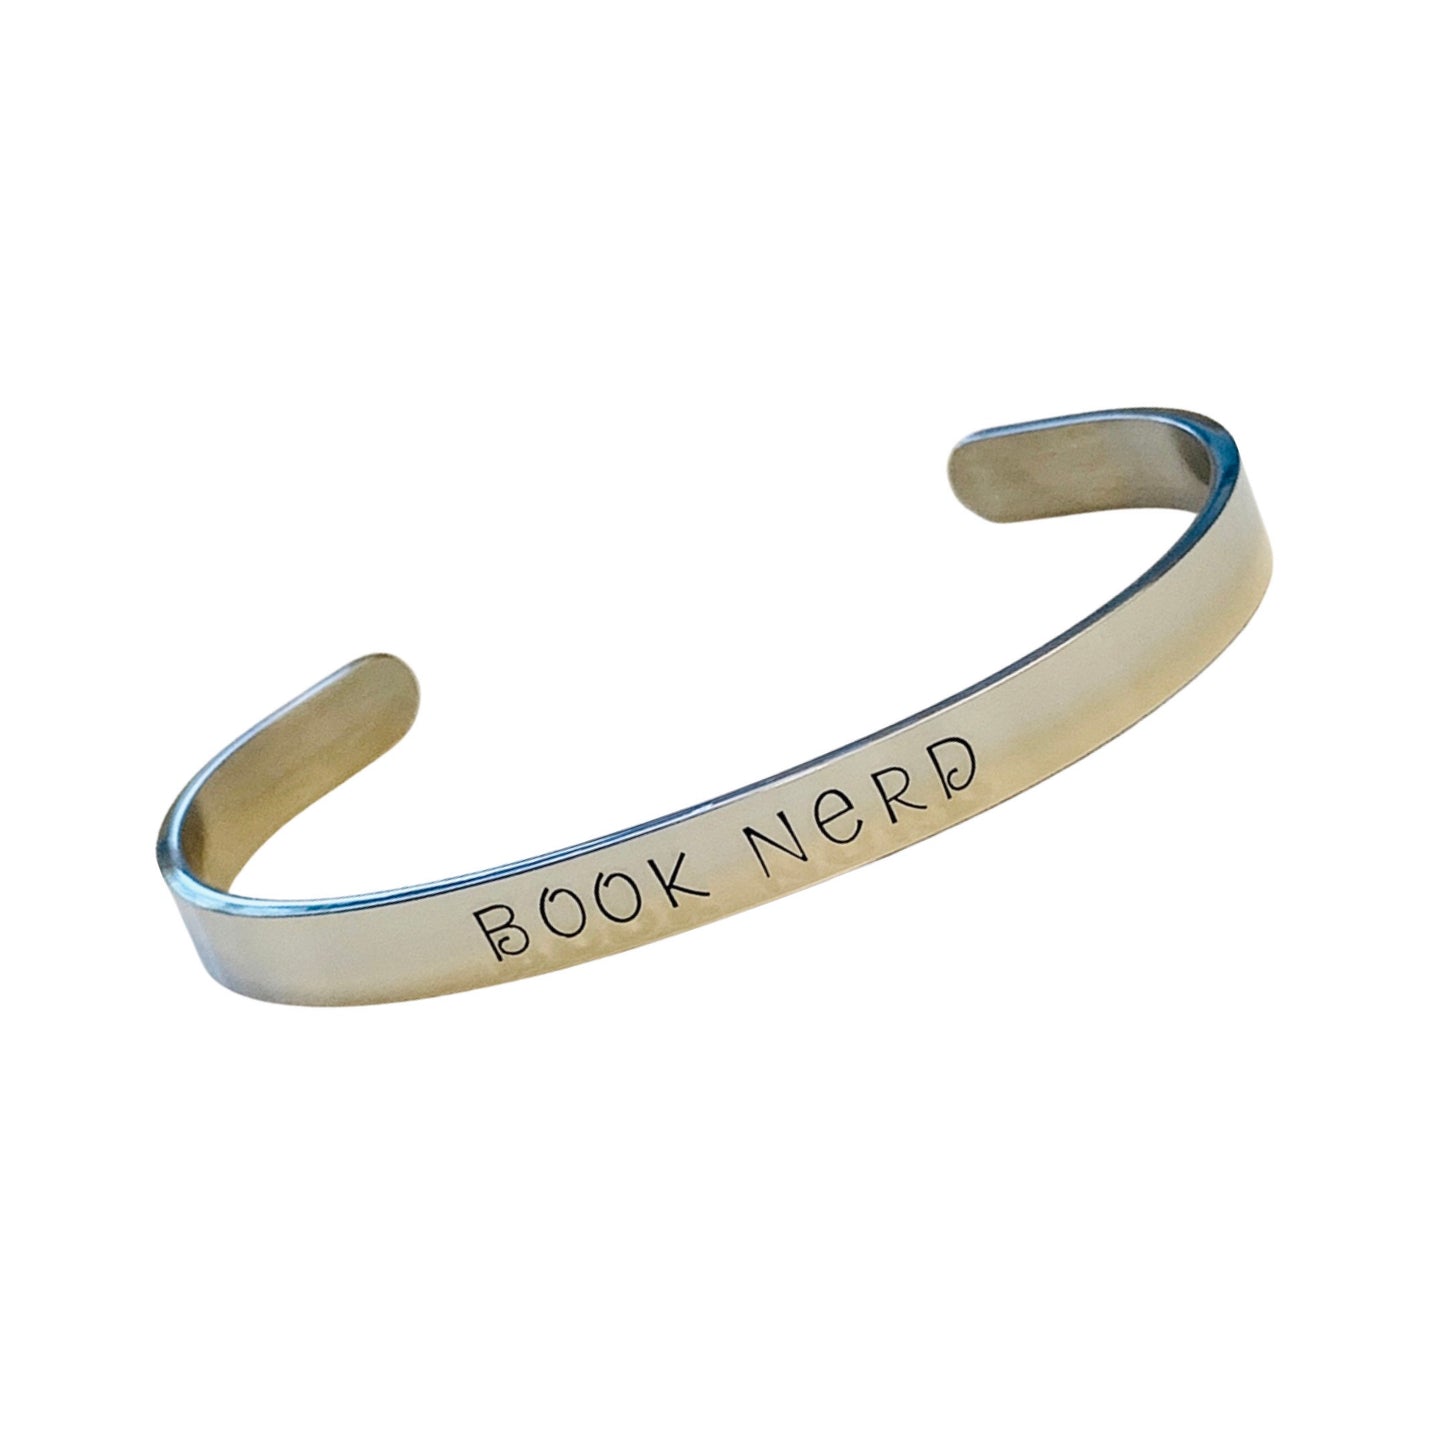 Book Nerd - Cuff Bracelet